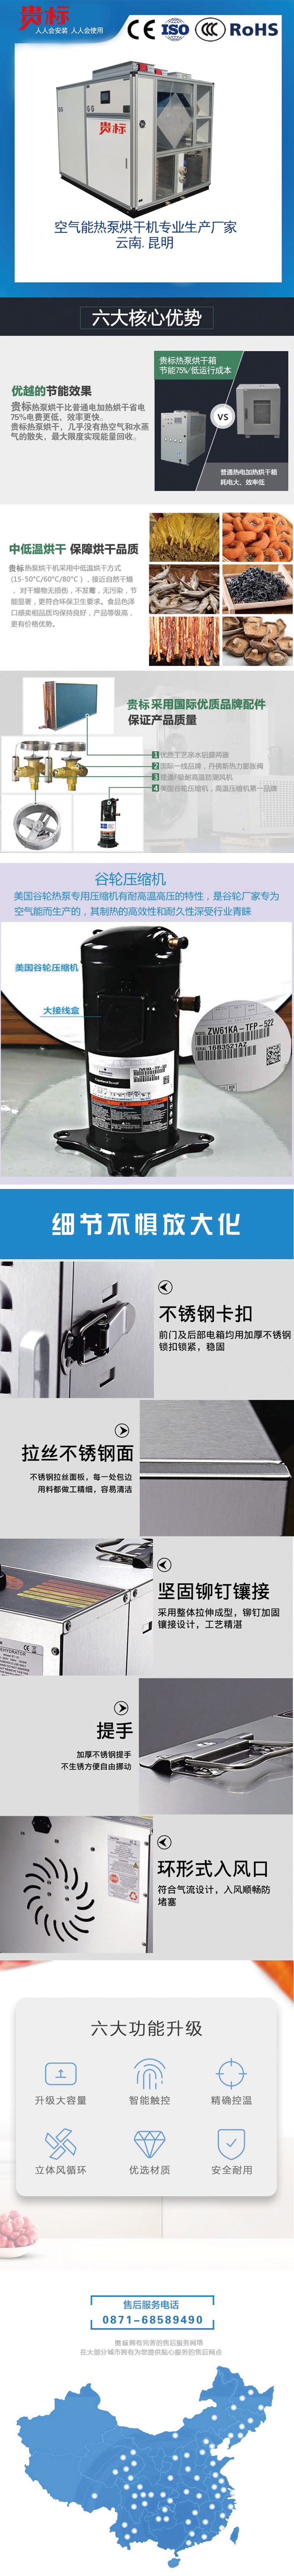 888游戏中央官方网站(中国游)首页入口